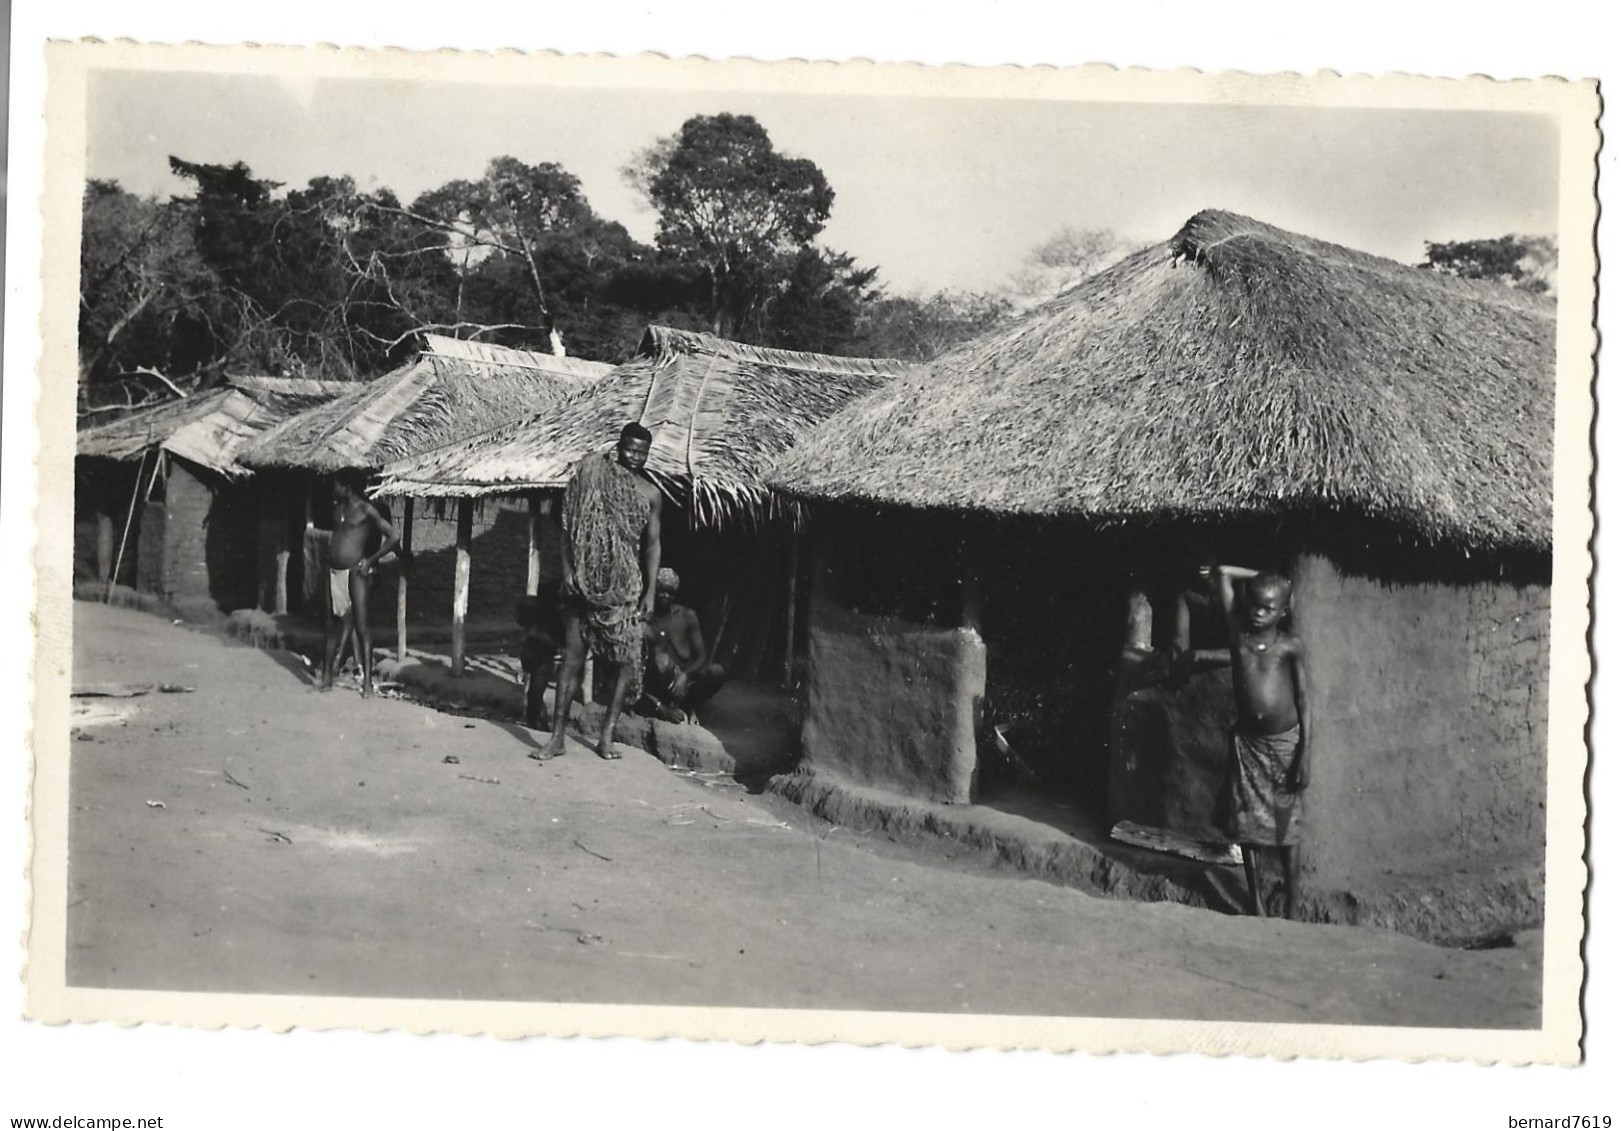 Republique Centrafricaine  -A.E.F. - Oubangui - Type D'habitations Indigenes De La Brousse  - Par  R Pauleau  Douala - Centrafricaine (République)